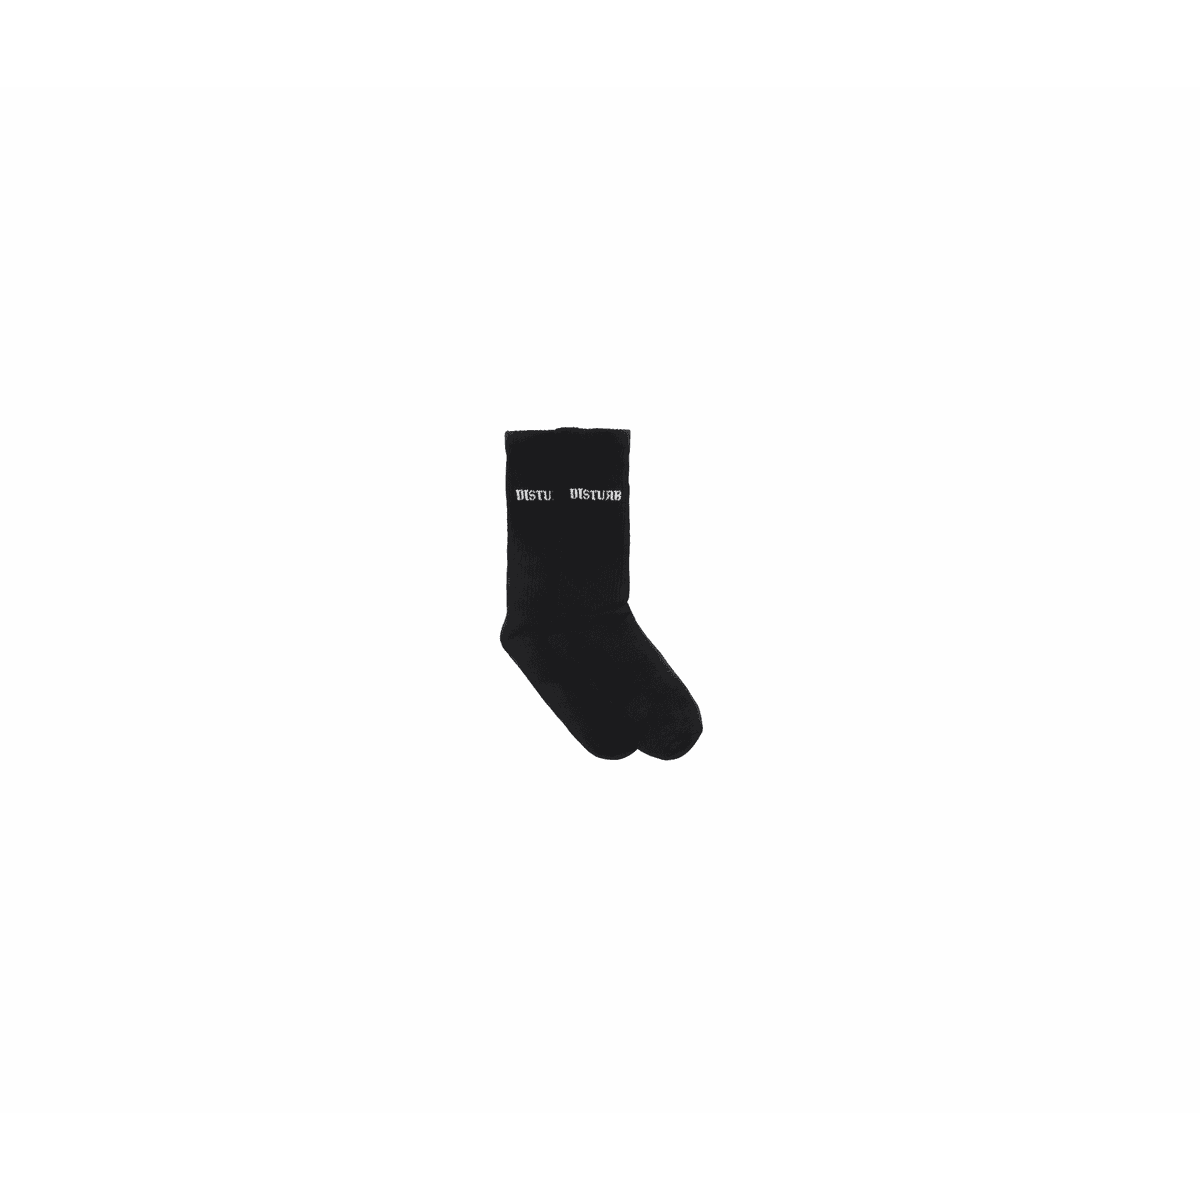 Socks Signature Disturb Black